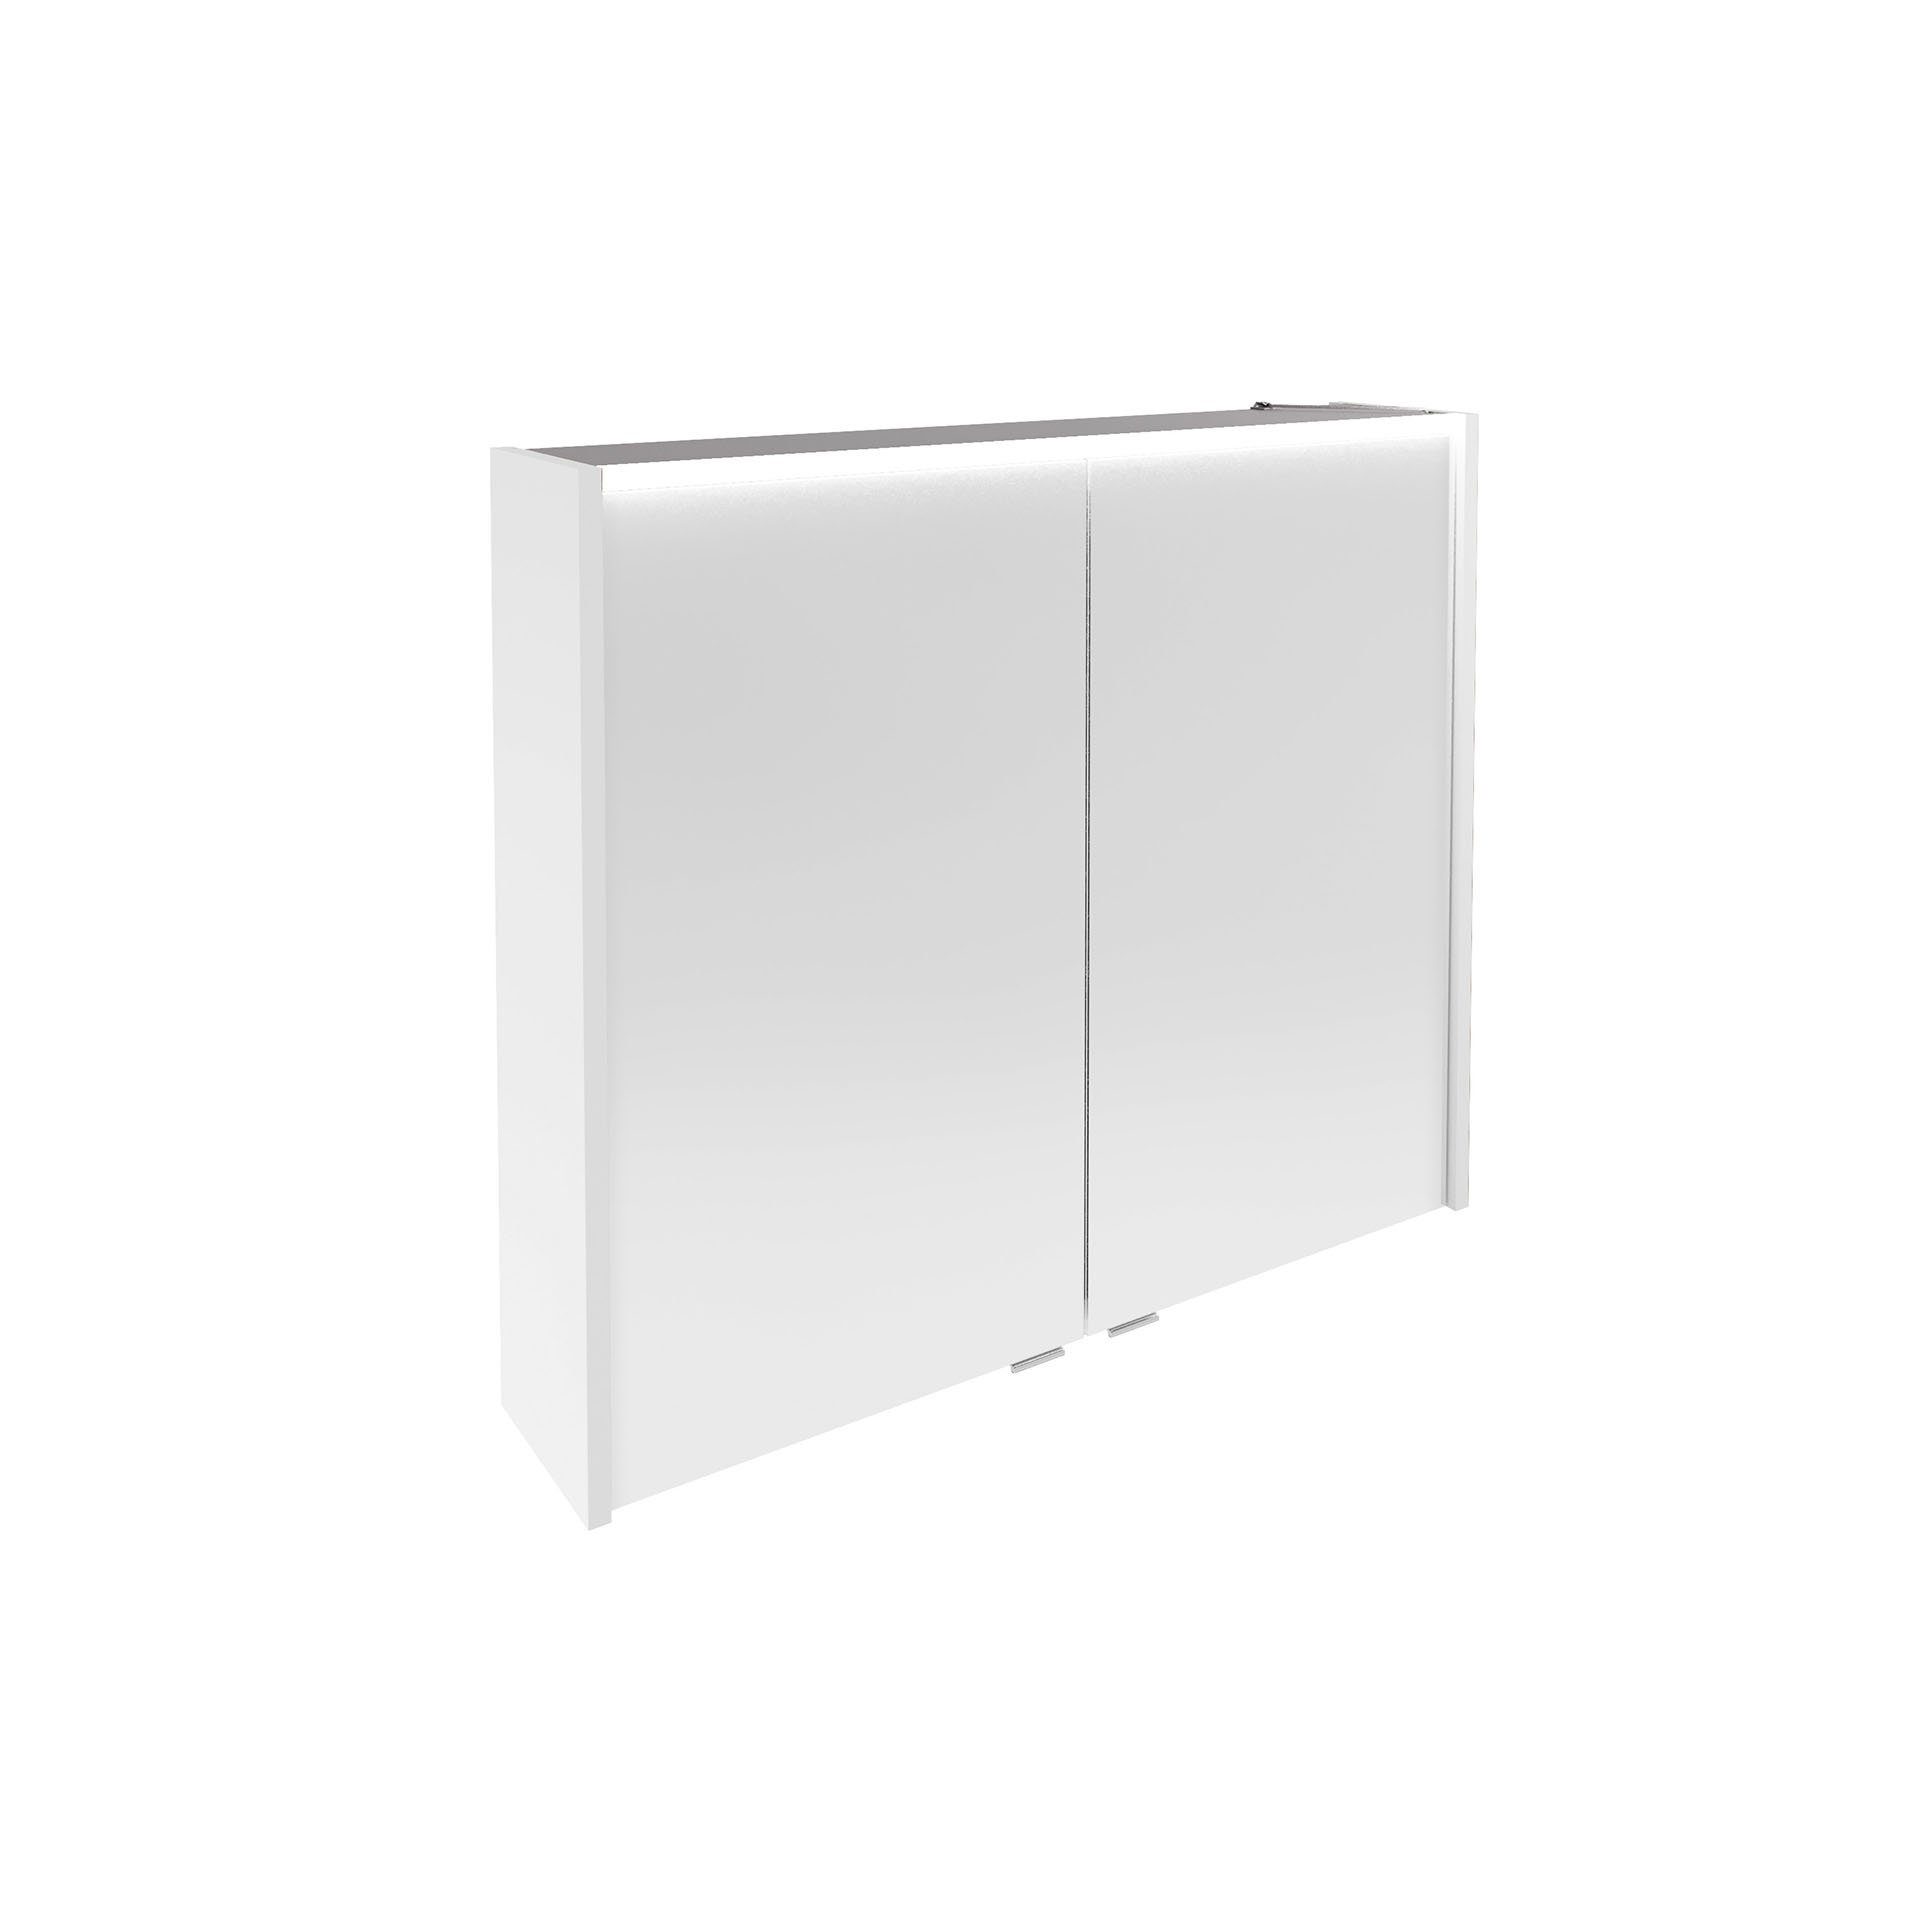 FACKELMANN Badezimmerspiegelschrank Verona LED-Spiegelschrank – vormontiert, hängend Weiß